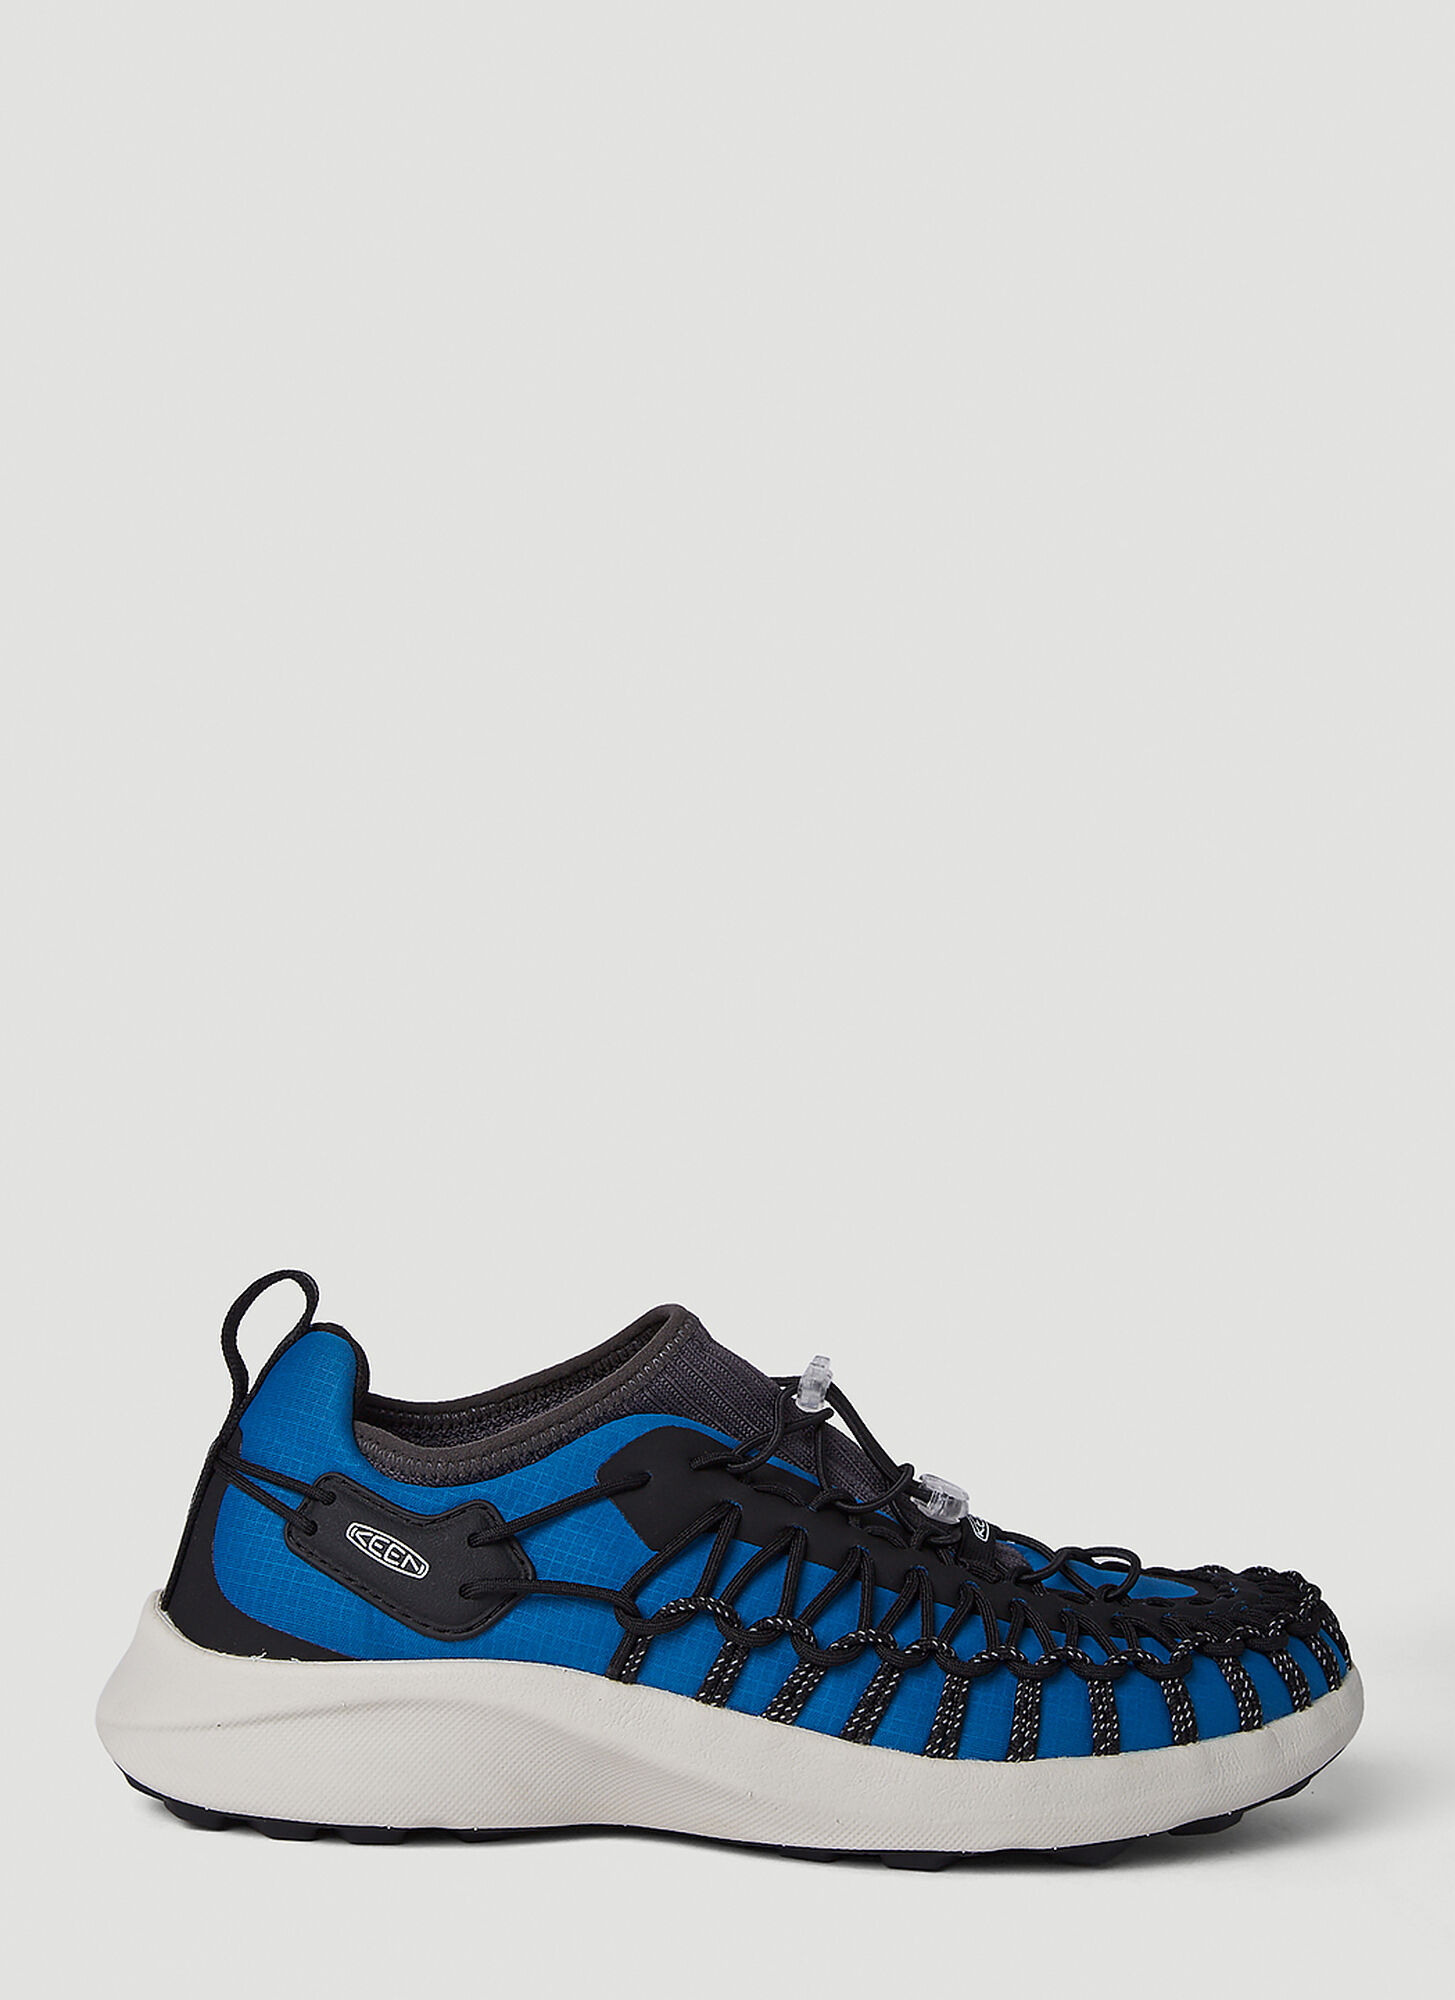 Keen Uneek Snk Sneakers Male Blue